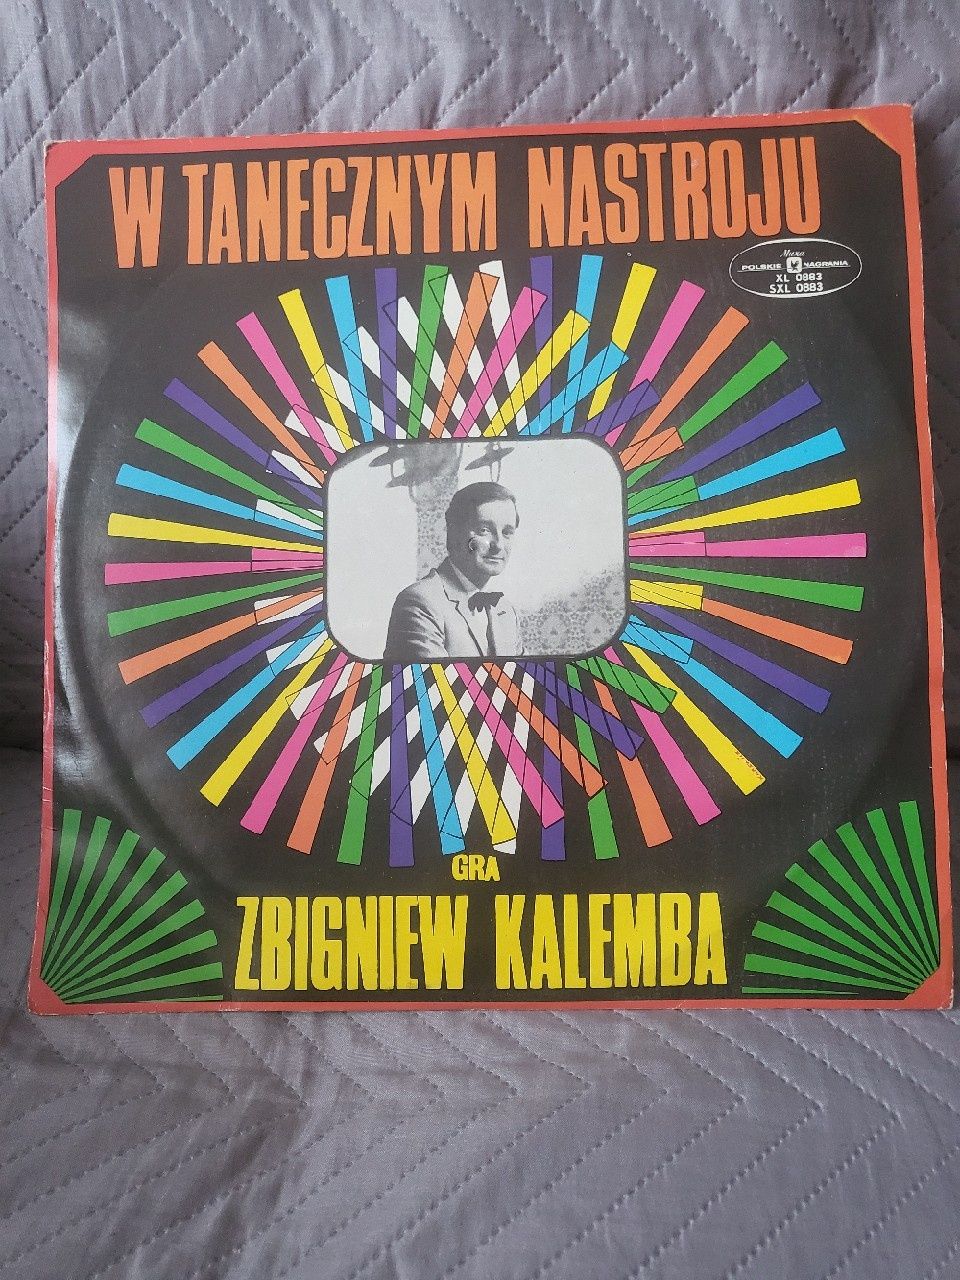 Nieodtwarzana, nieużywana płyta vinyl Z. KALEMBA  W tanecznym nastroju